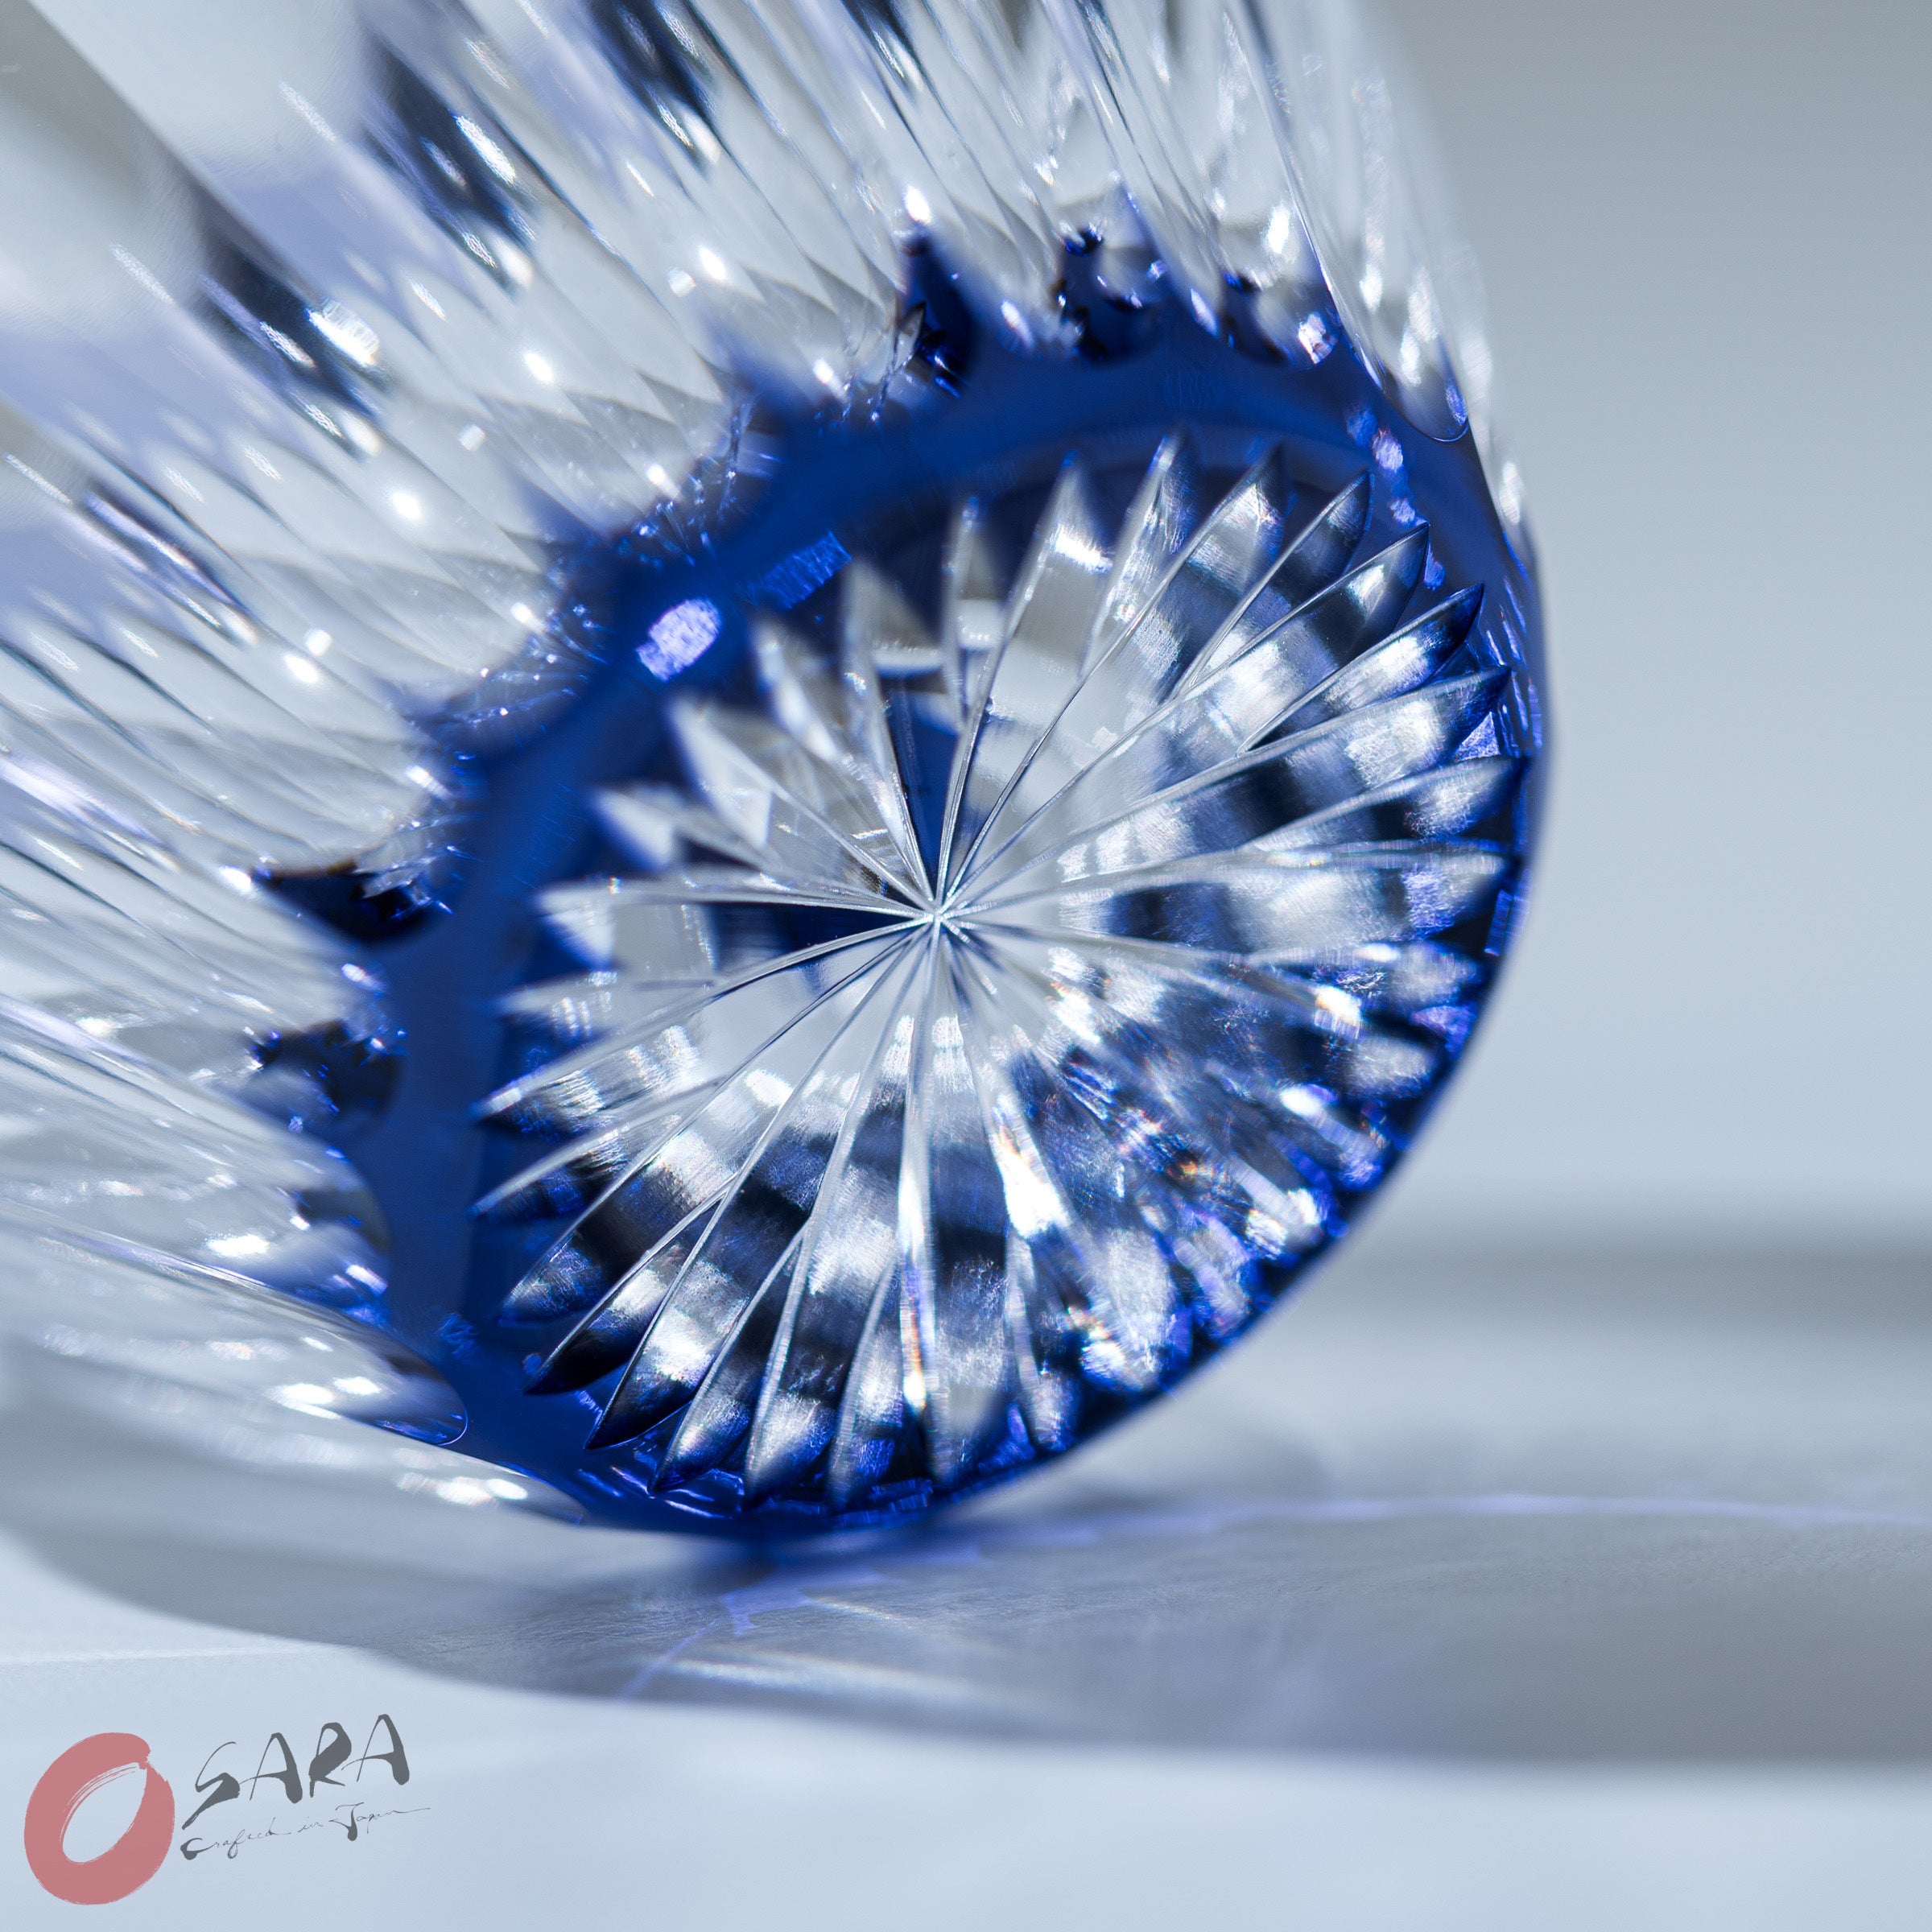 KAGAMI Crystal Sake Glass - Chrysanthemum / 菊花